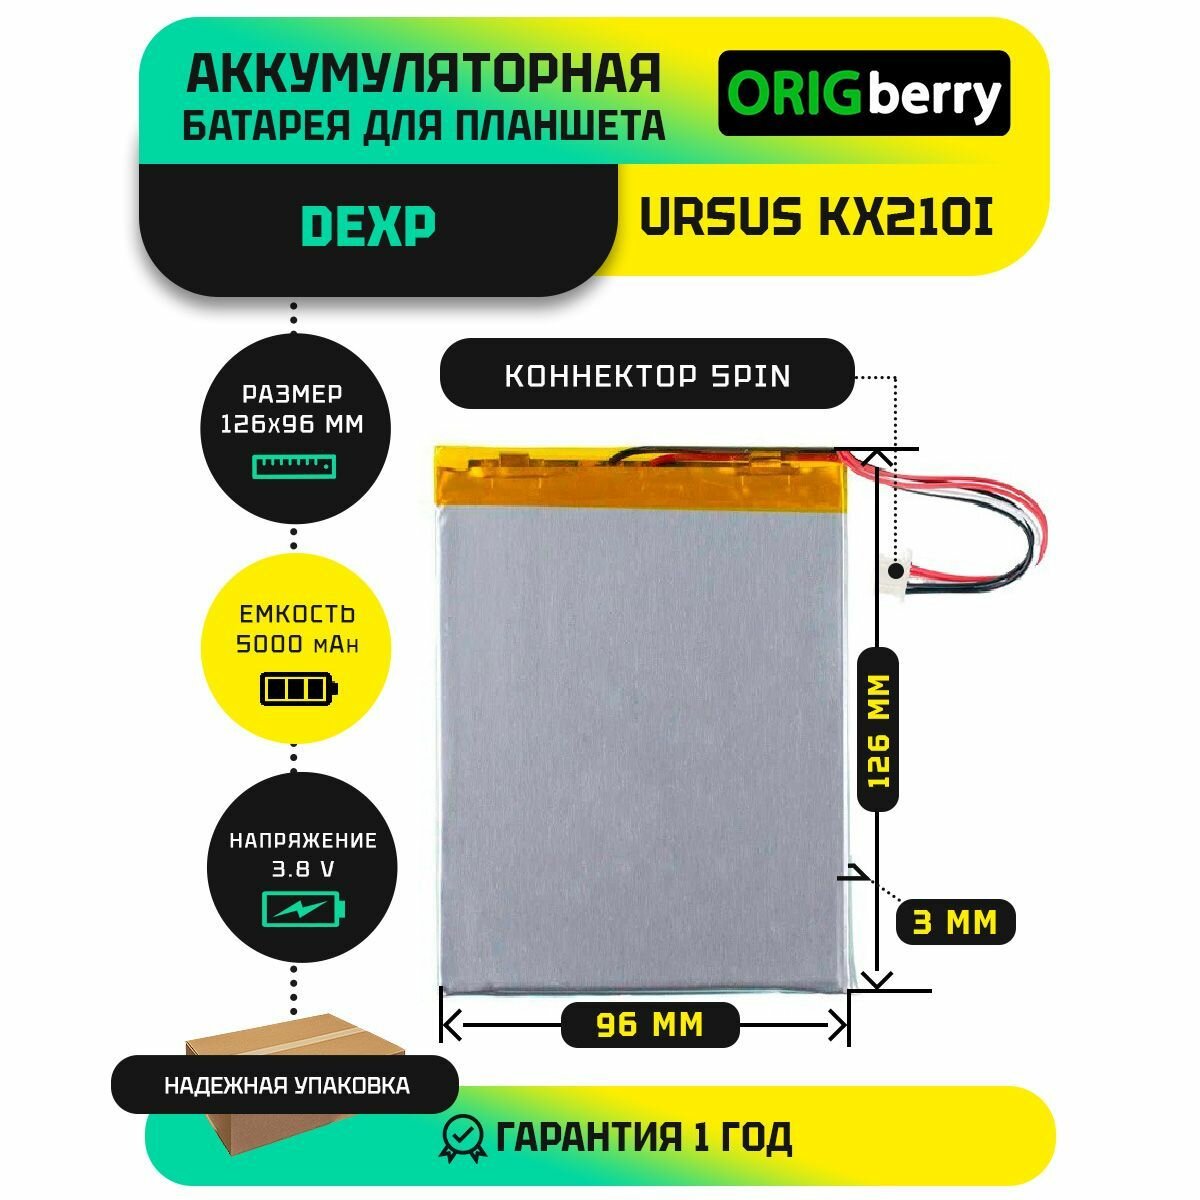 Аккумулятор для планшета Dexp Ursus KX210i WiFi 38 V / 5000 mAh / 126мм x 96мм x 3мм / коннектор 5 PIN